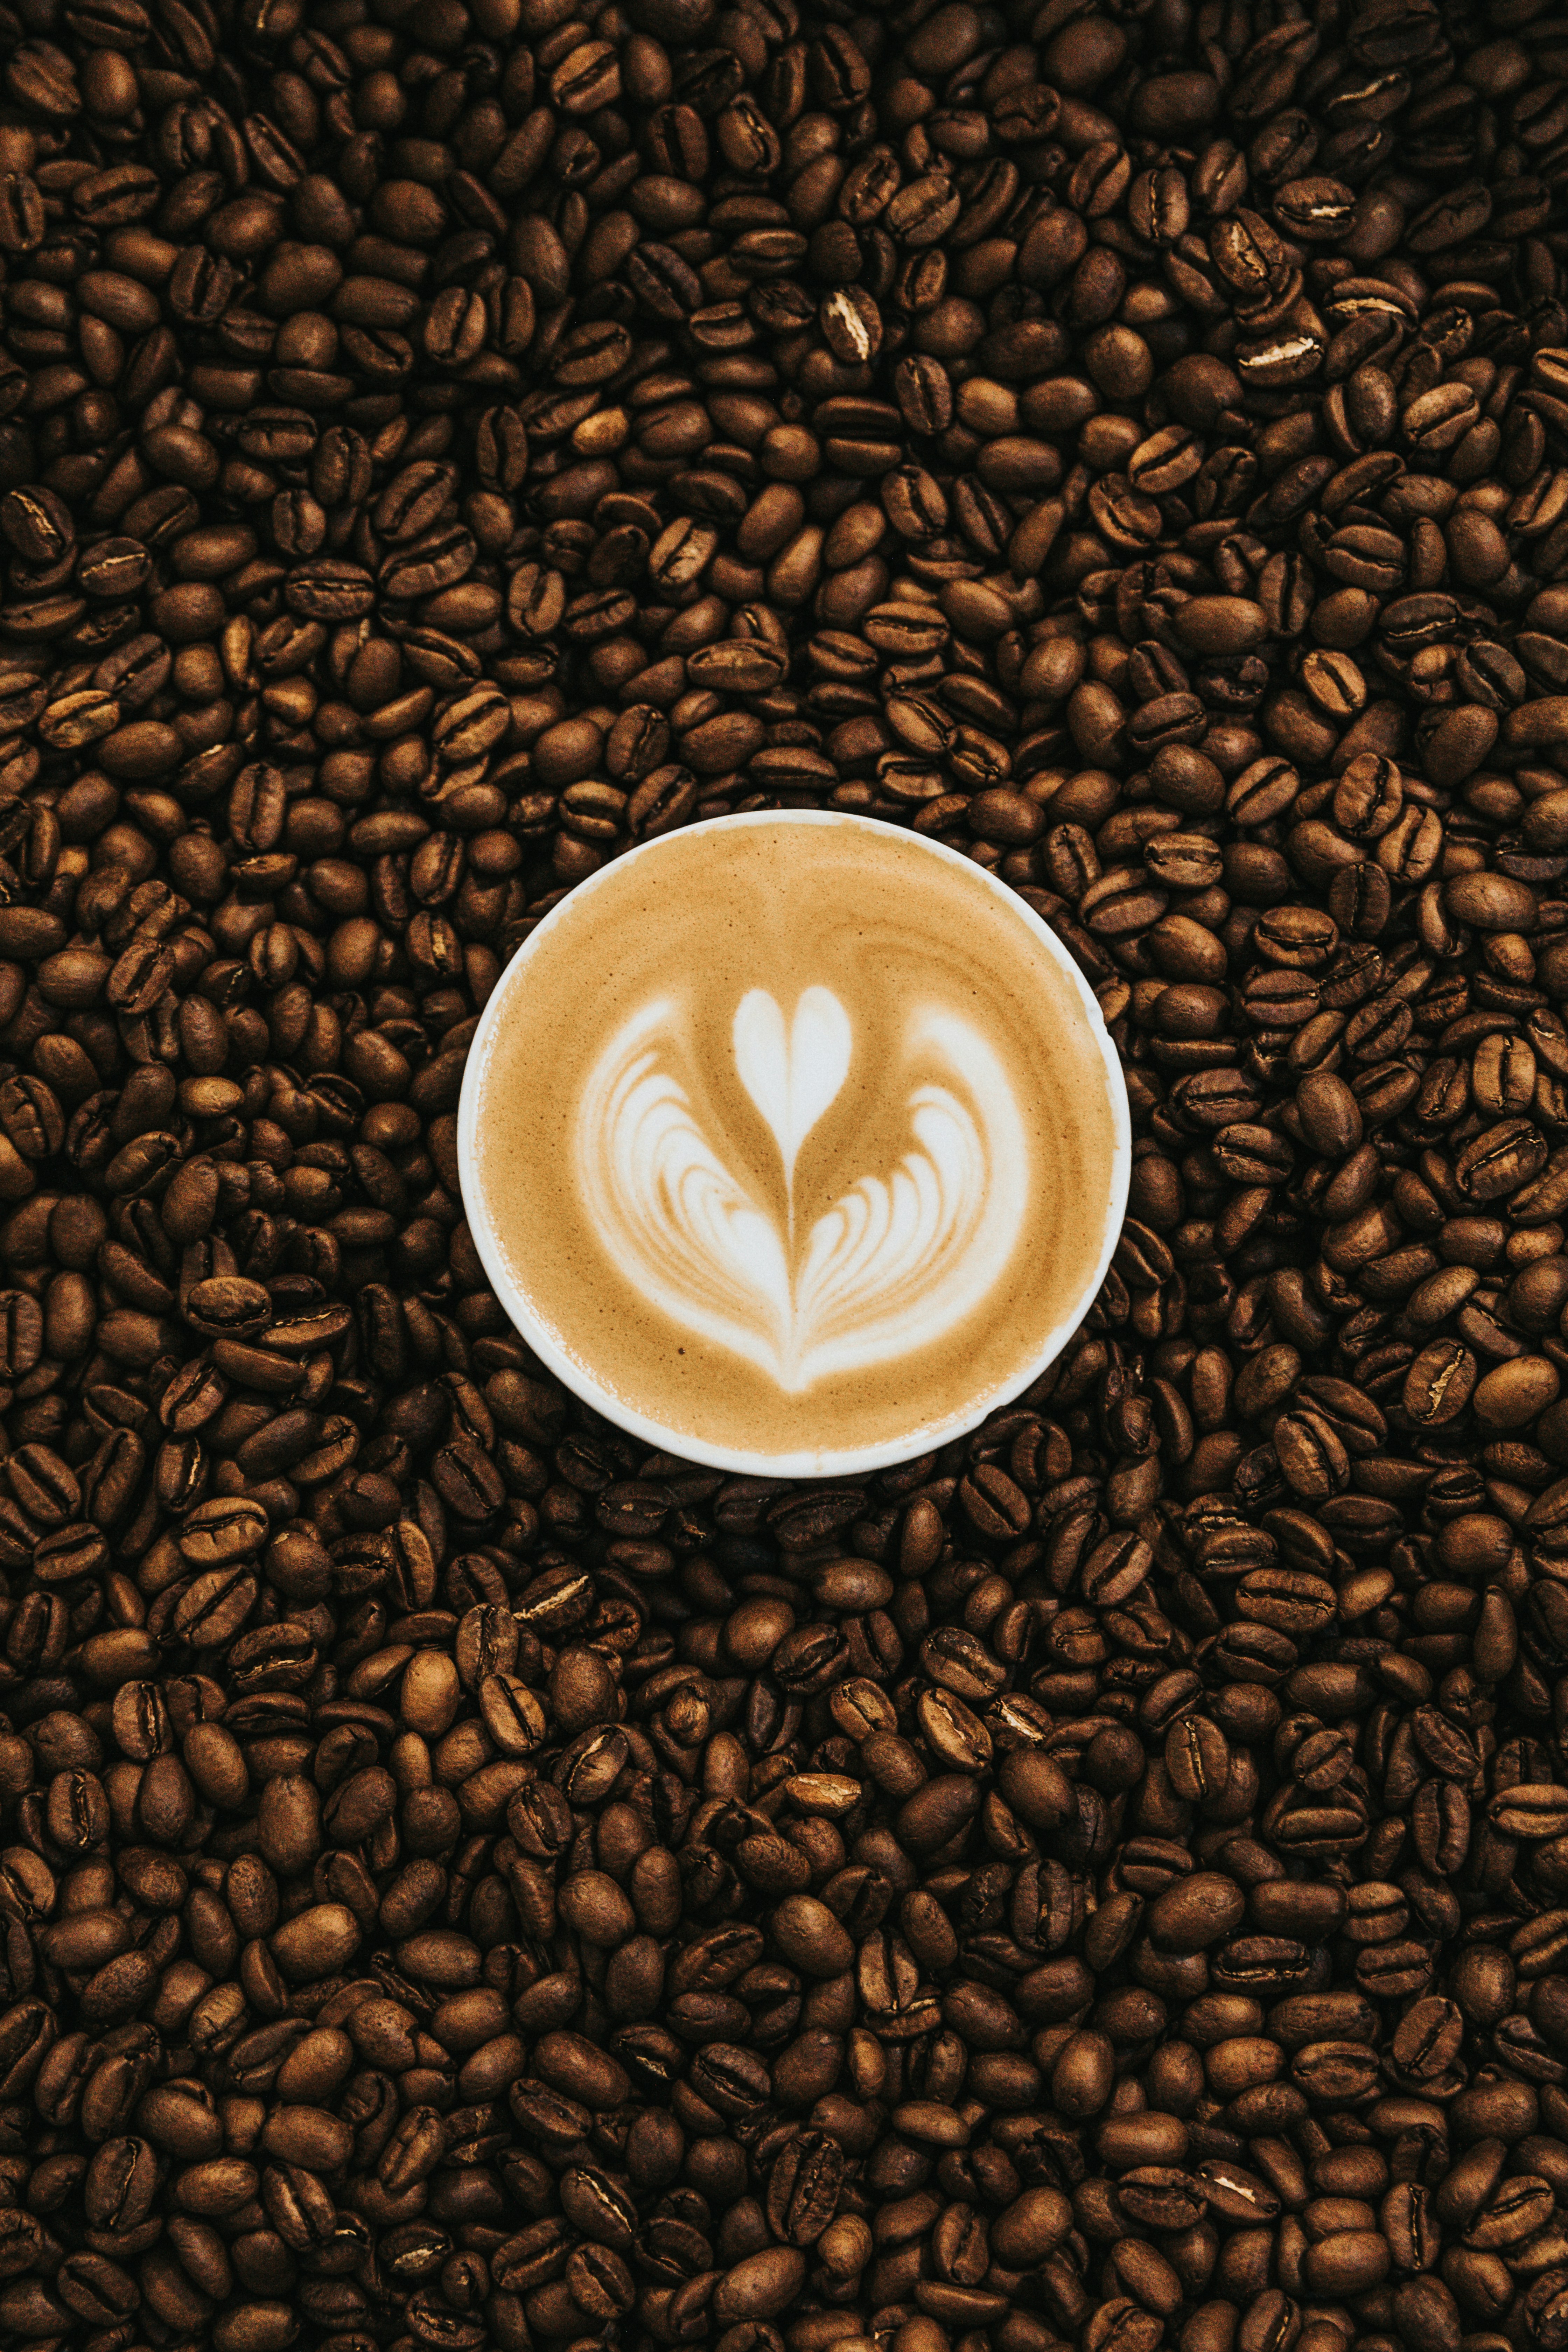 Η υπερκατανάλωση του καφέ μπορεί να προκαλέσει δηλητηρίαση - Τι πρέπει να ξέρετε